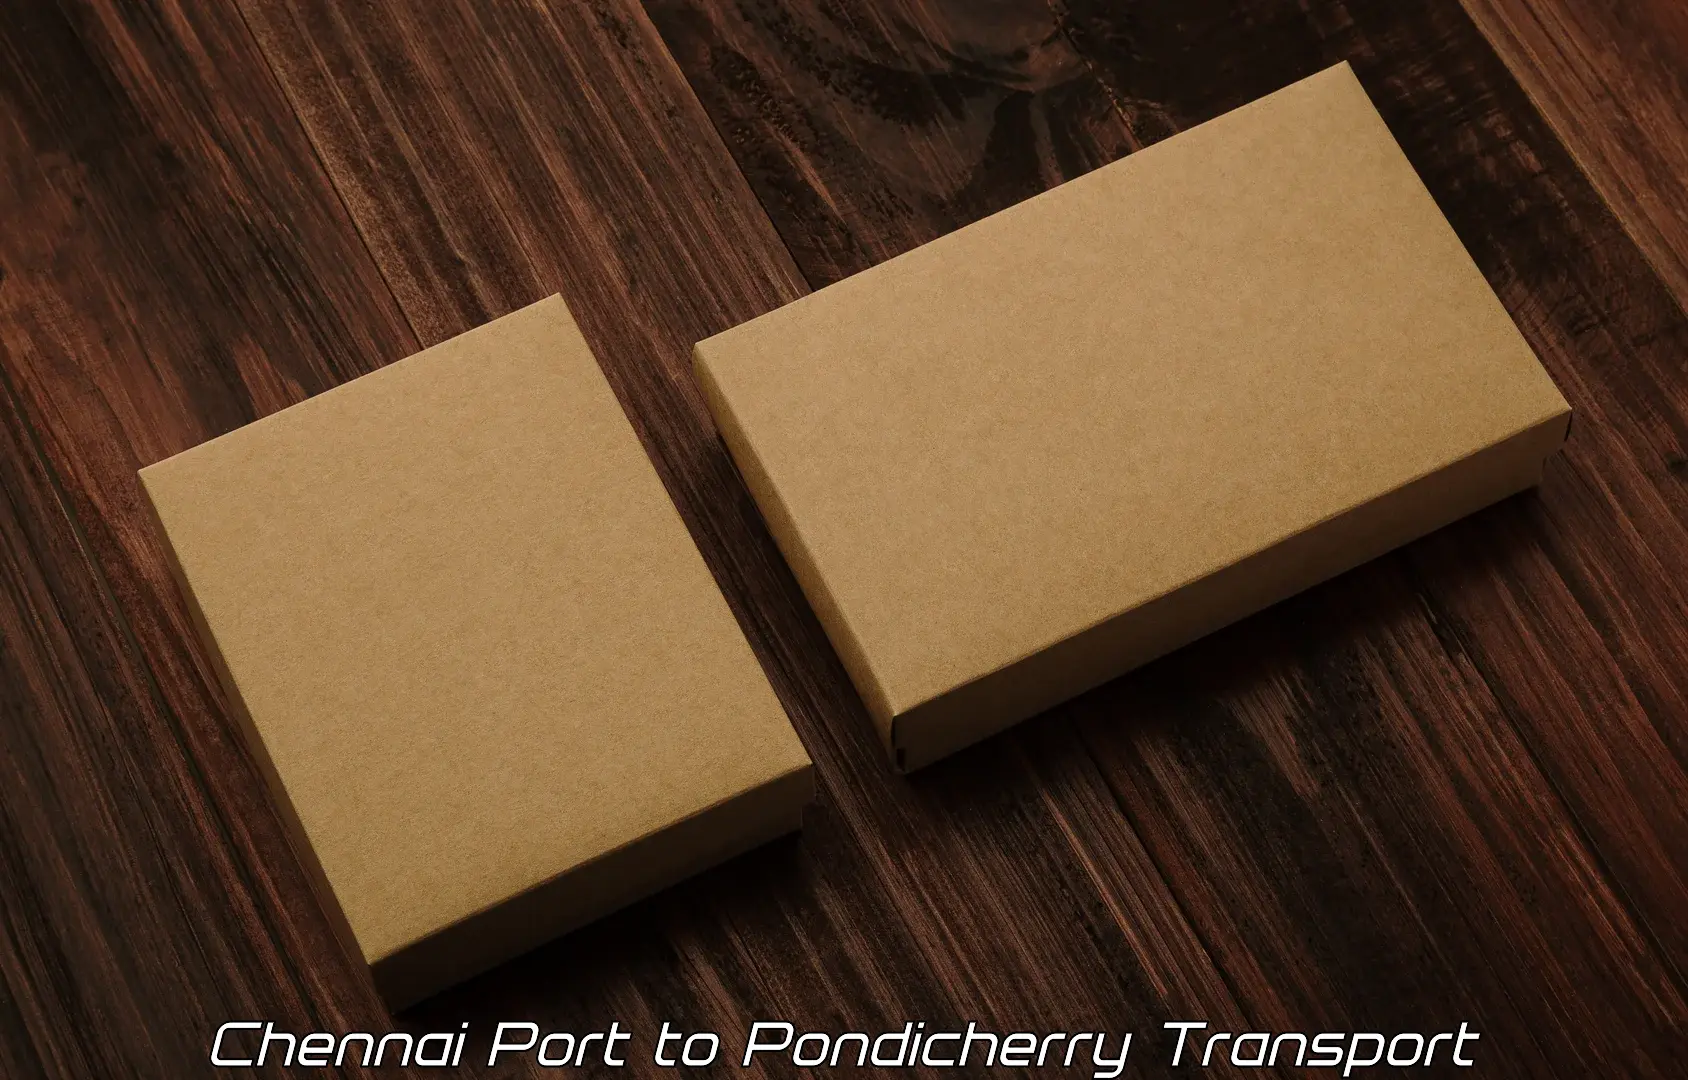 Daily parcel service transport Chennai Port to Pondicherry University